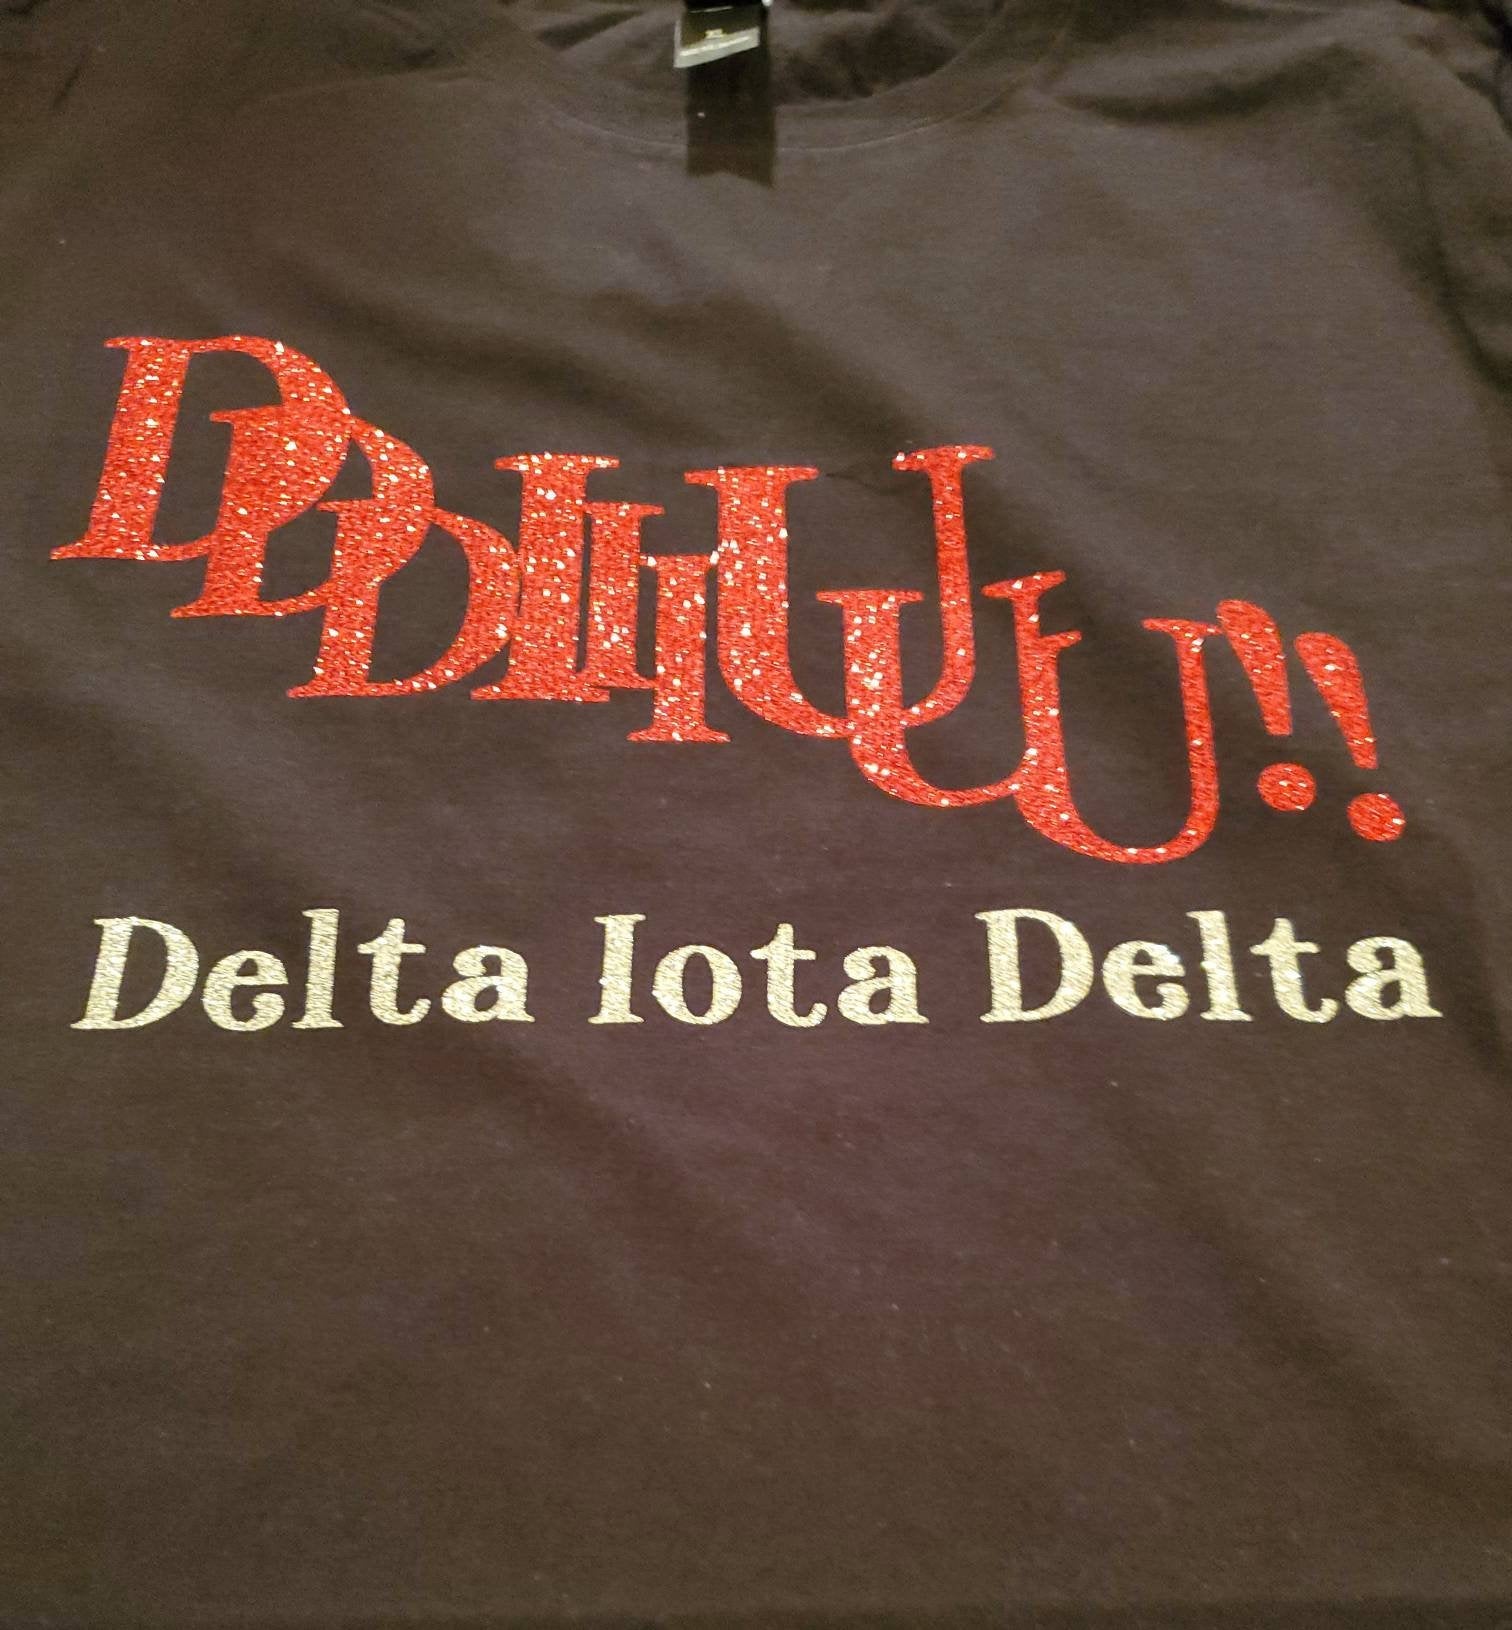 Delta iota delta call tee